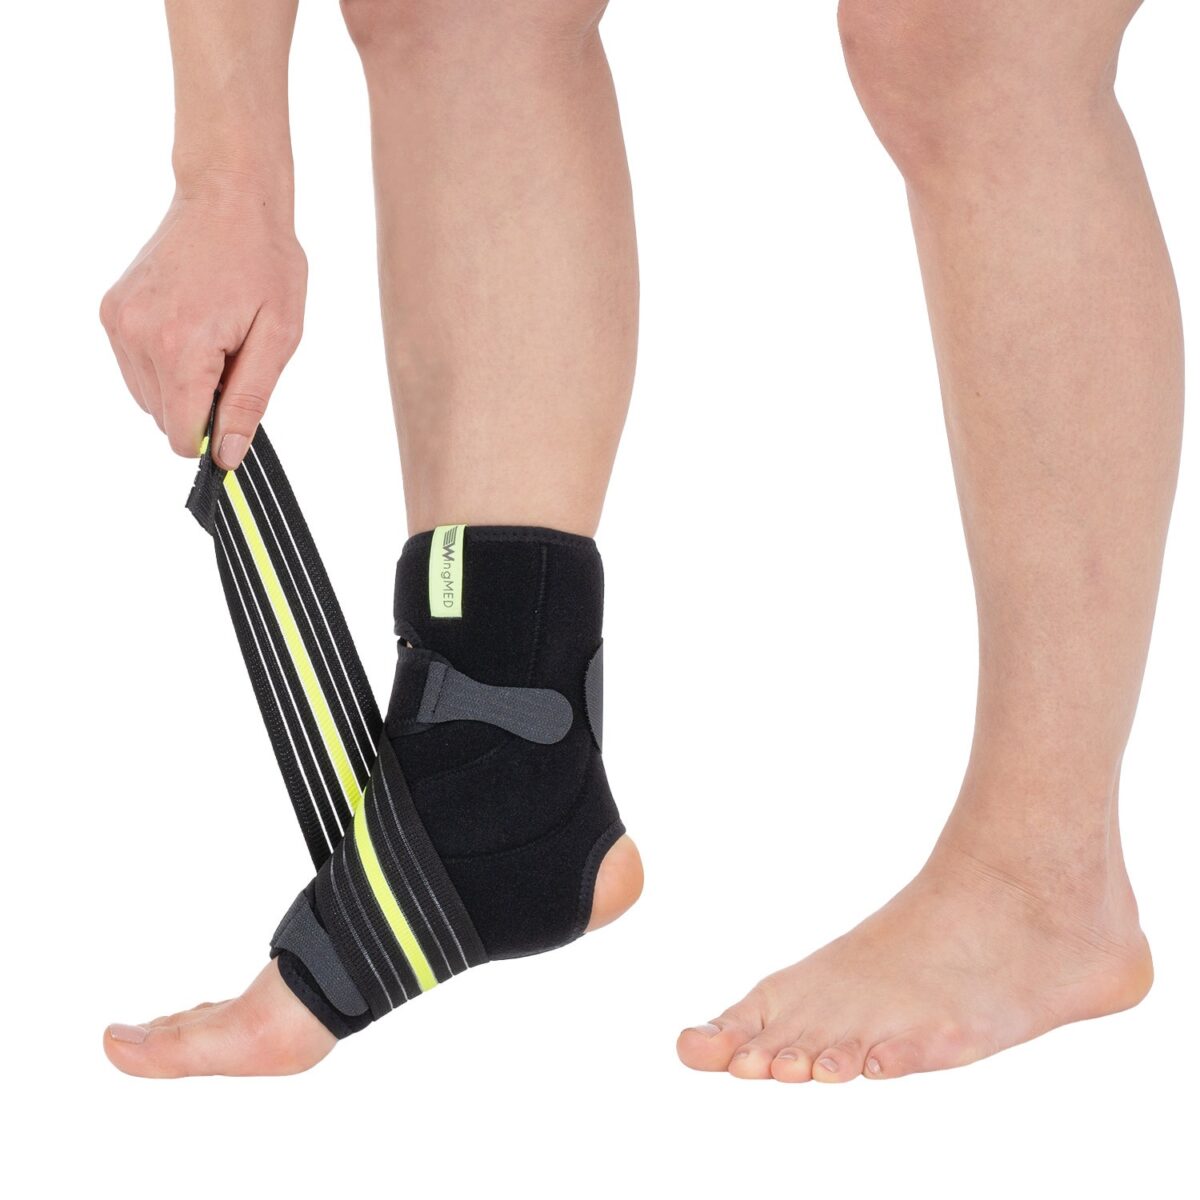 wingmed ortopedik urunler Ayak Bileklik Ve Destek Grubu W606 ligament destekli ayak bileklik 8 bandaji 67 1